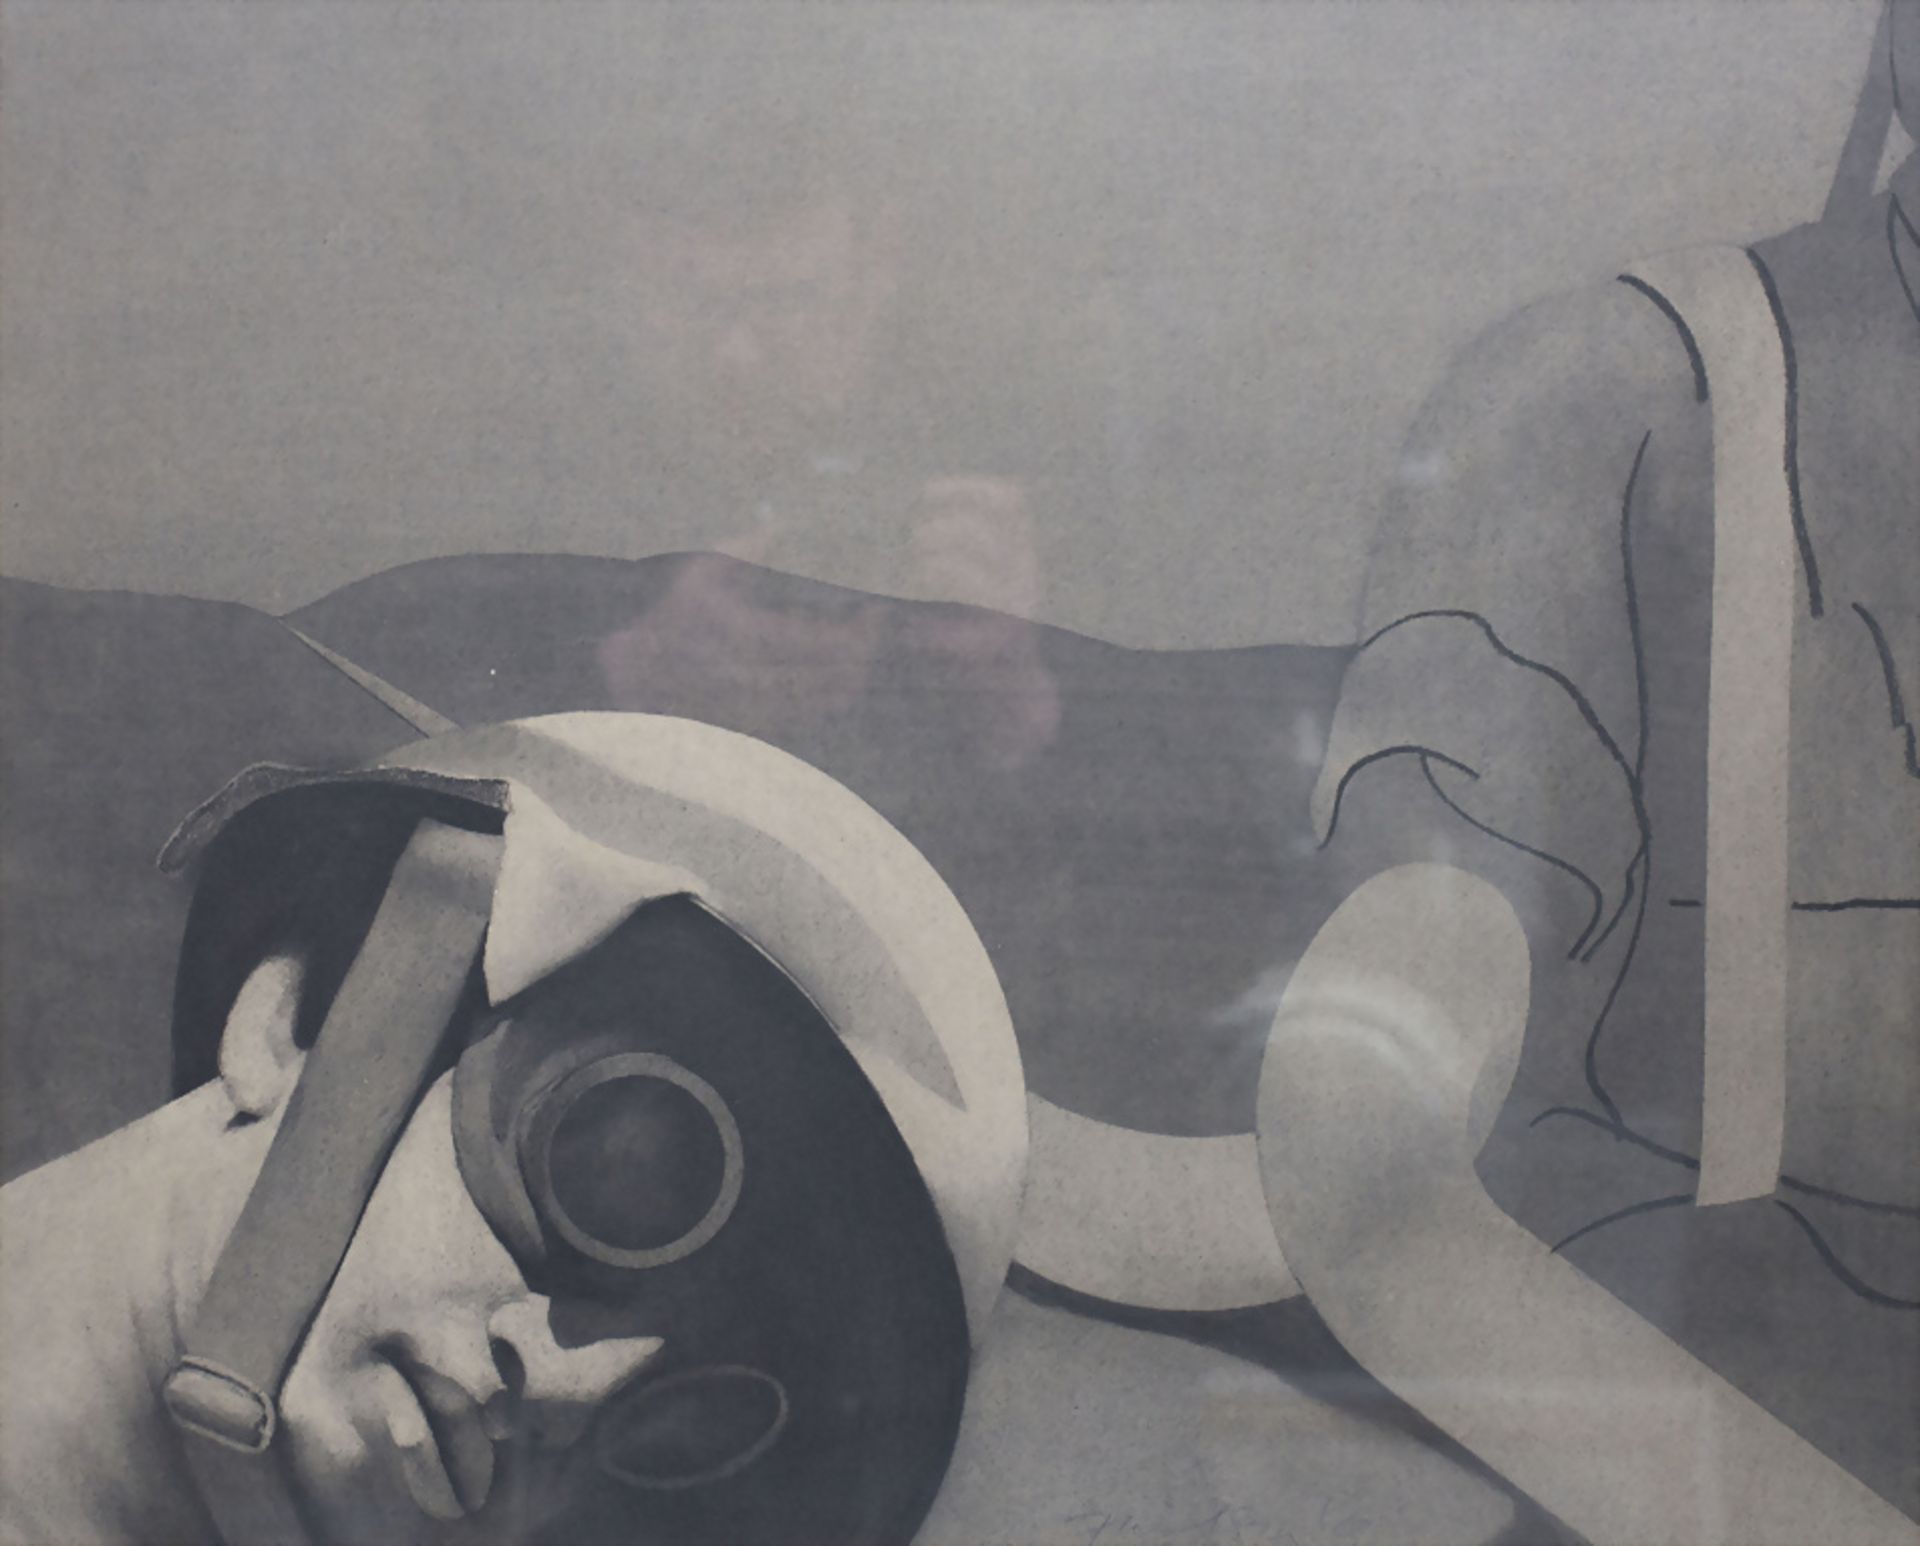 Unbekannter Signaturist des 20. Jh., 'Der Stahlhelmträger' / 'The steal helmet wearer', 1968